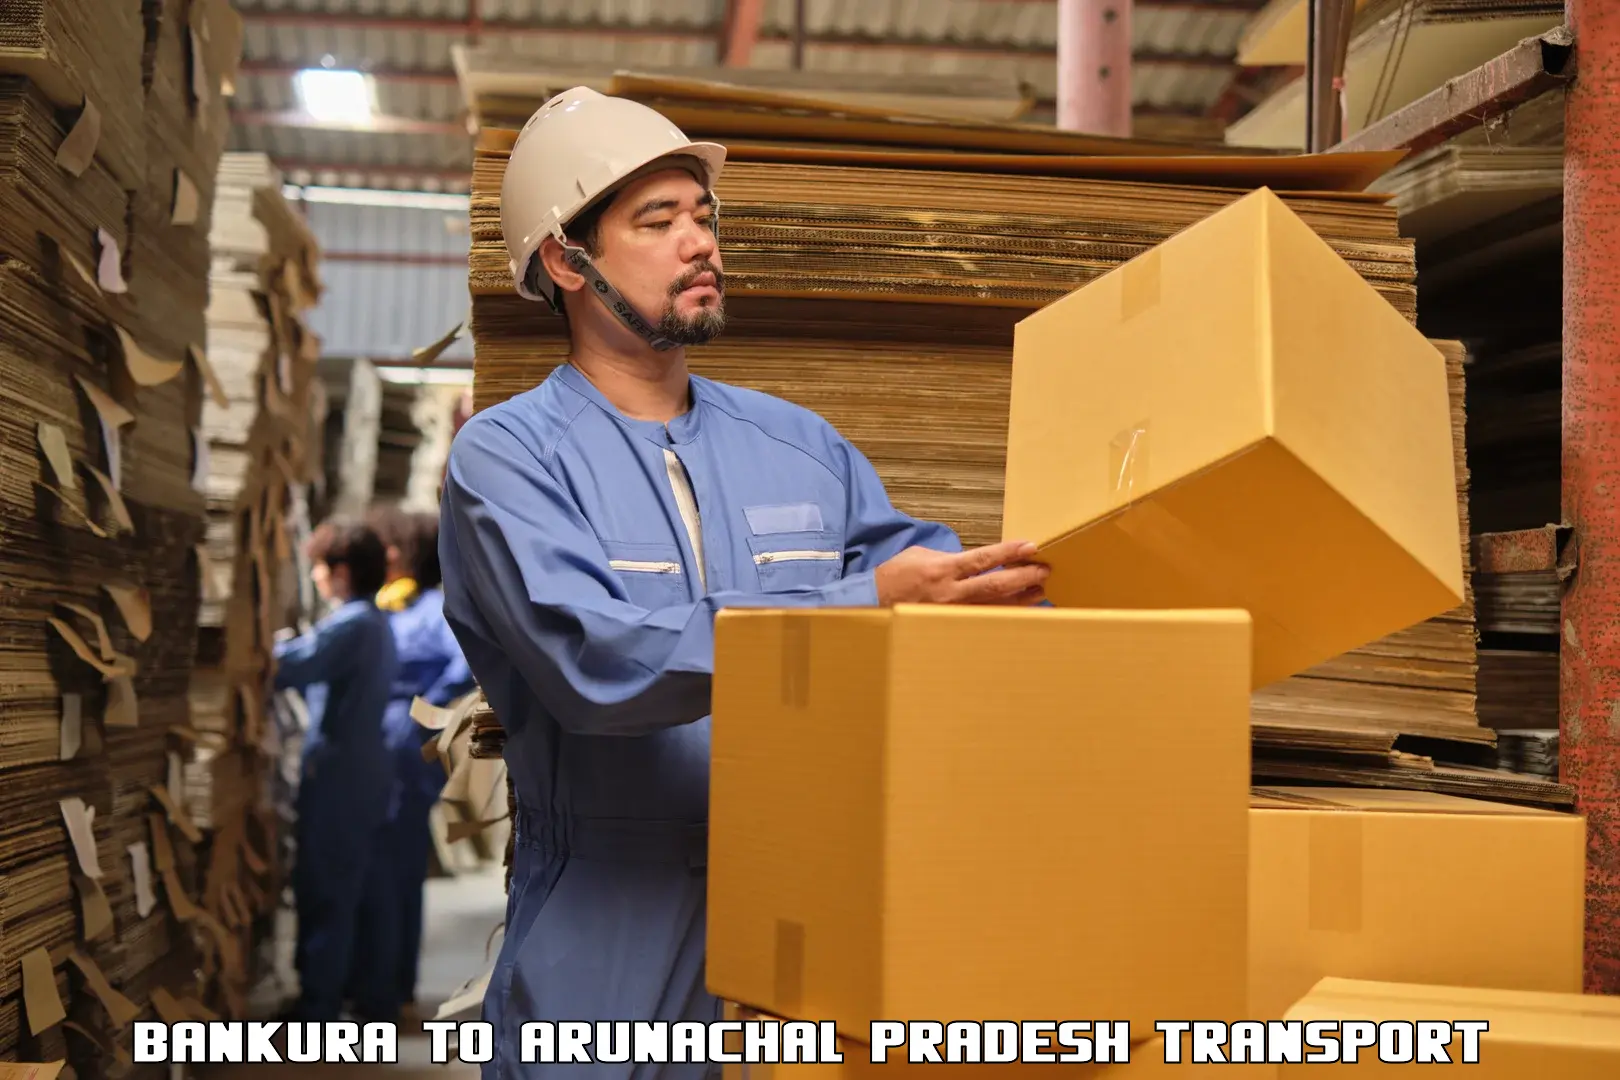 Shipping partner Bankura to Naharlagun